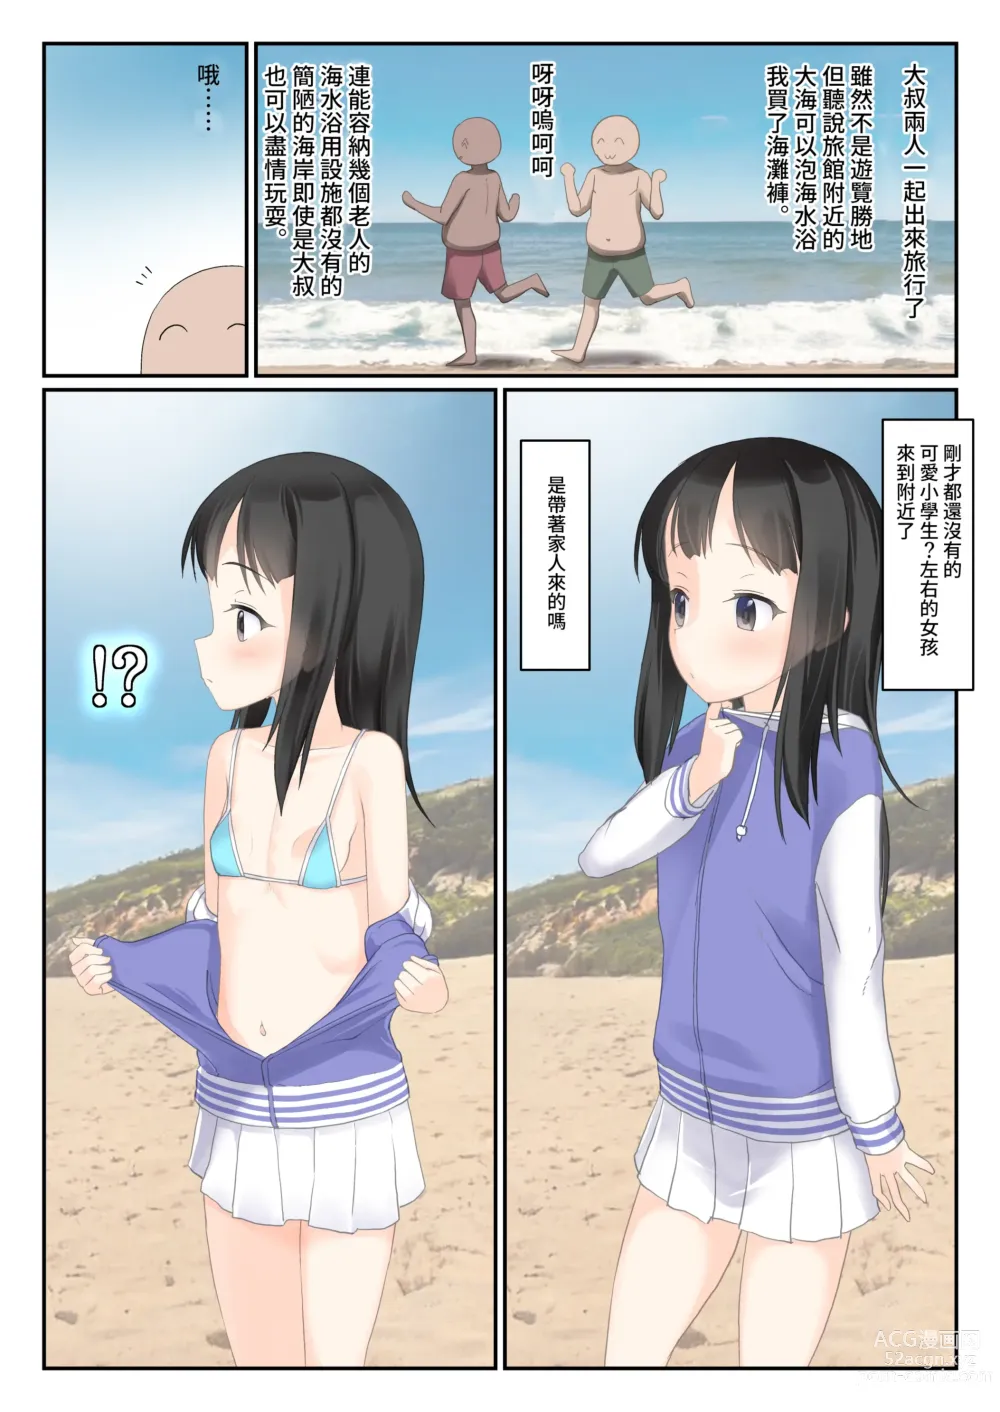 Page 2 of doujinshi 旅行目的地冷清的海邊等待搭訕的少女在等候著我